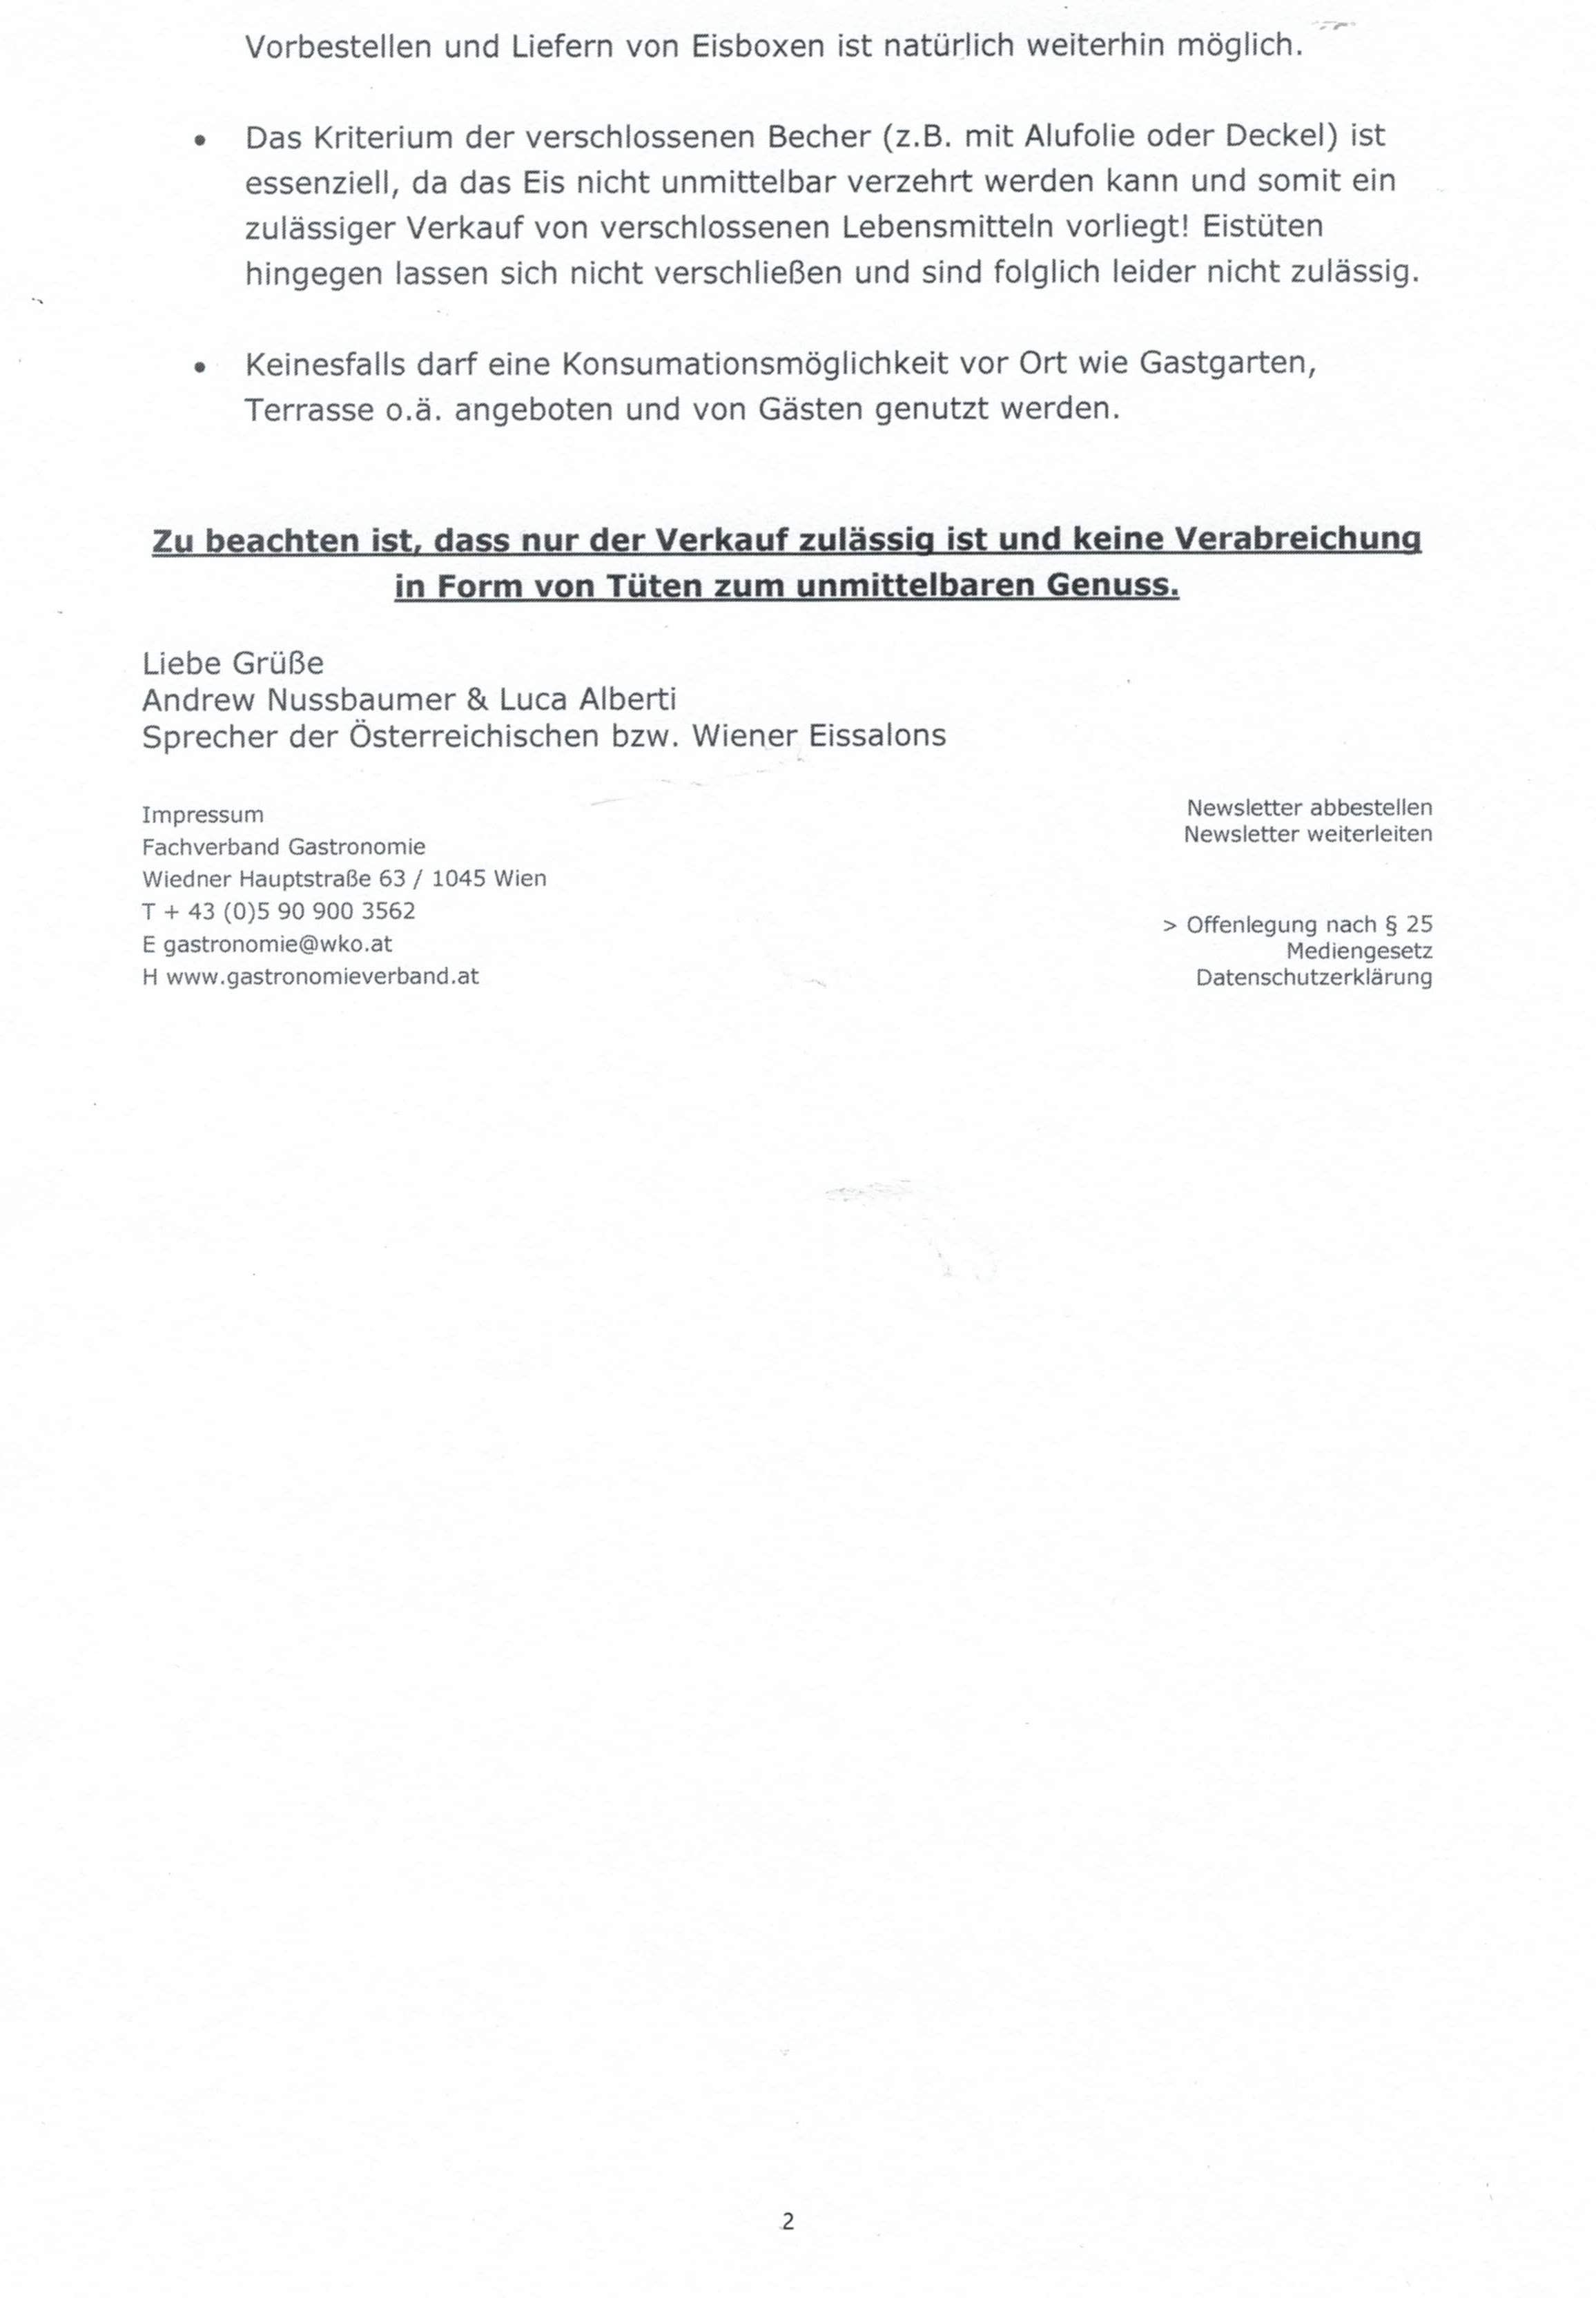 Newsletter Fachverband der Gastronomie v. 17.4.2020 Eissalons